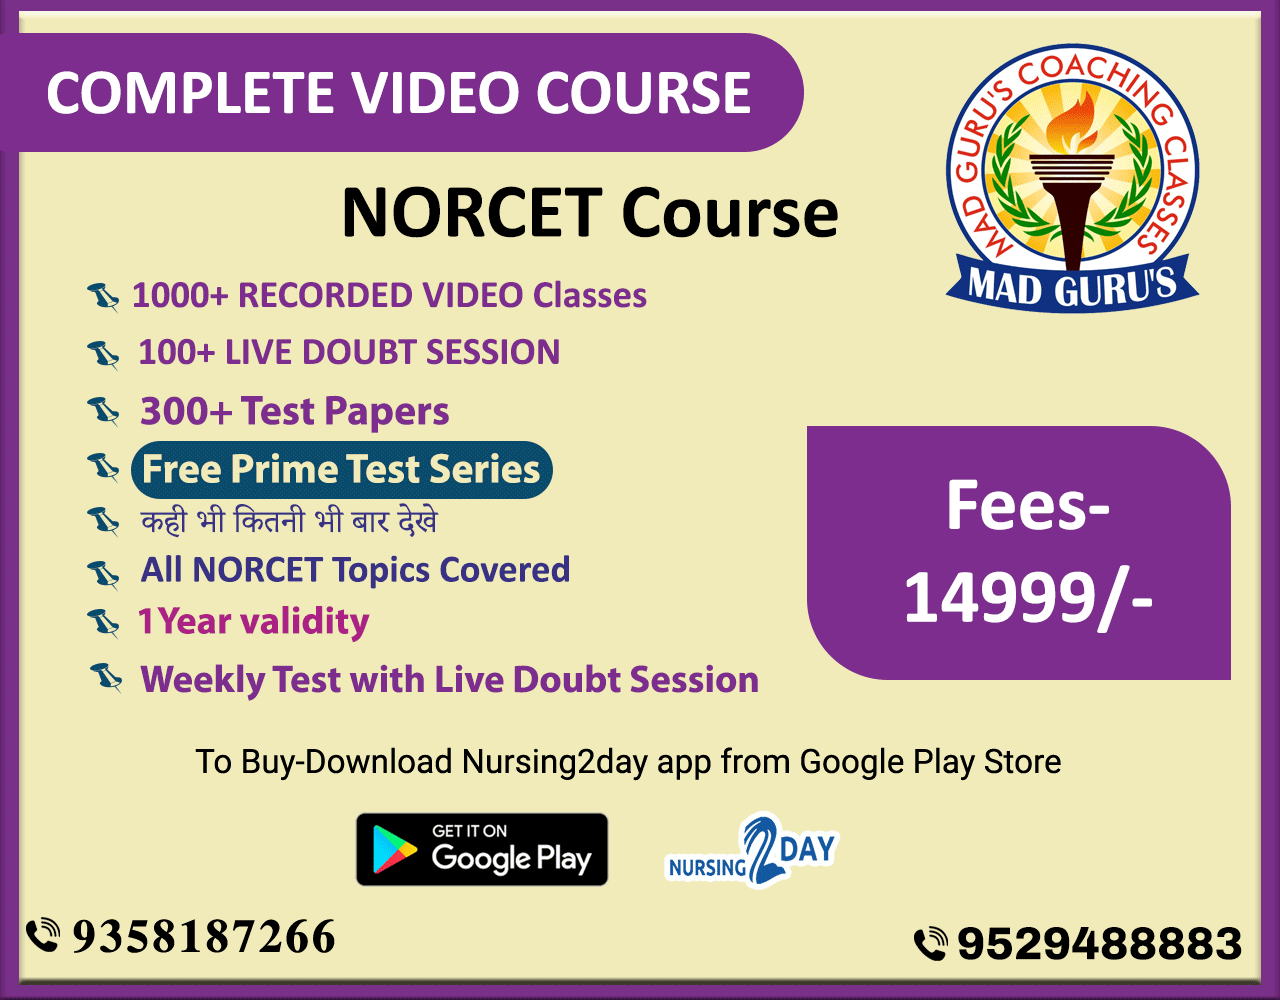 Demo Norcet course